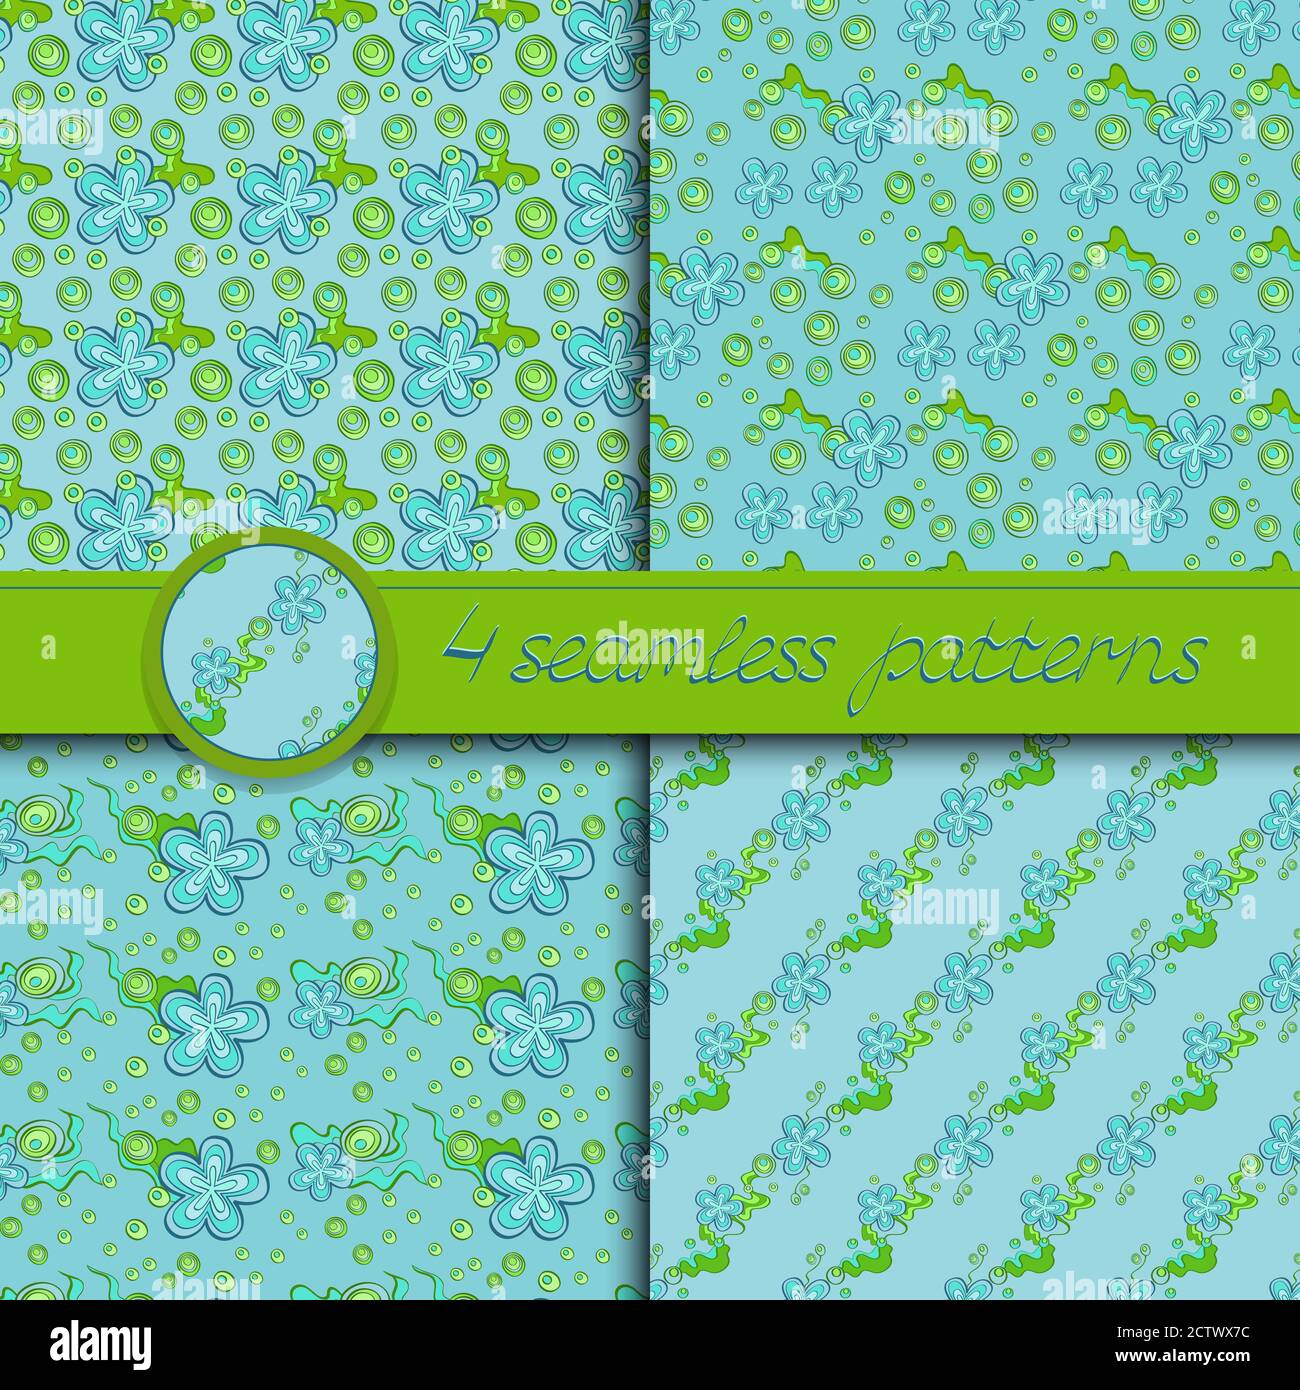 Serie vettoriale di motivi senza cuciture con elementi floreali. Collezione di motivi in verde e blu chiaro. Illustrazione Vettoriale